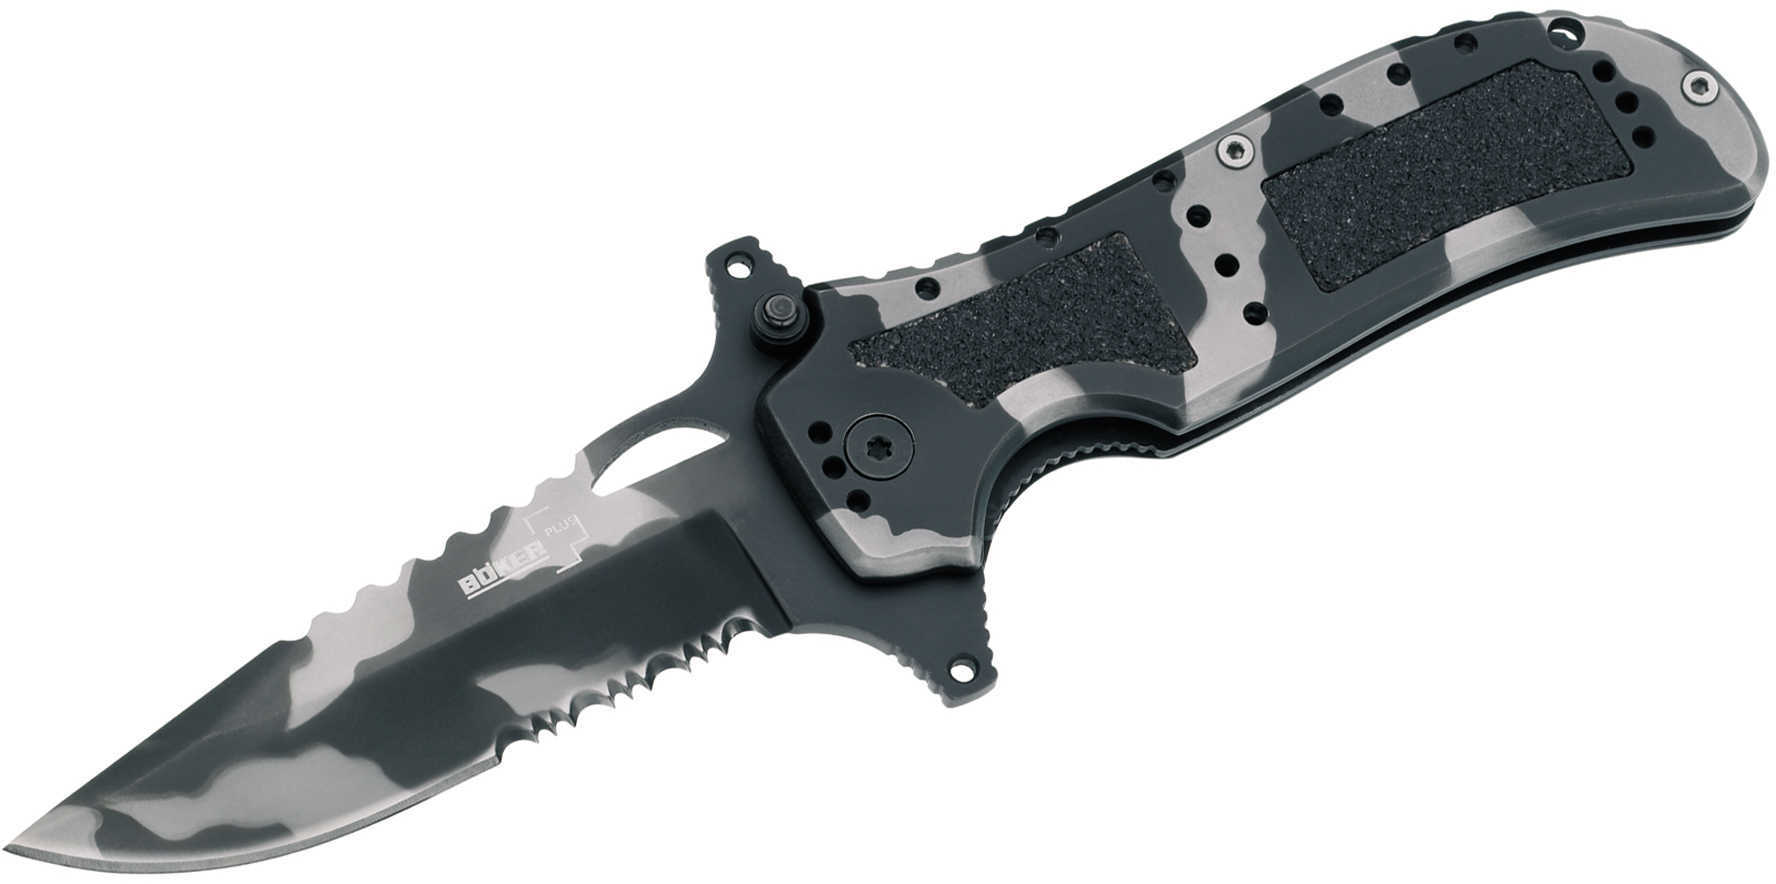 Boker Plus Folder Knife 3.8" Steel Drop Point Reptile Inlays/ 01Bo119